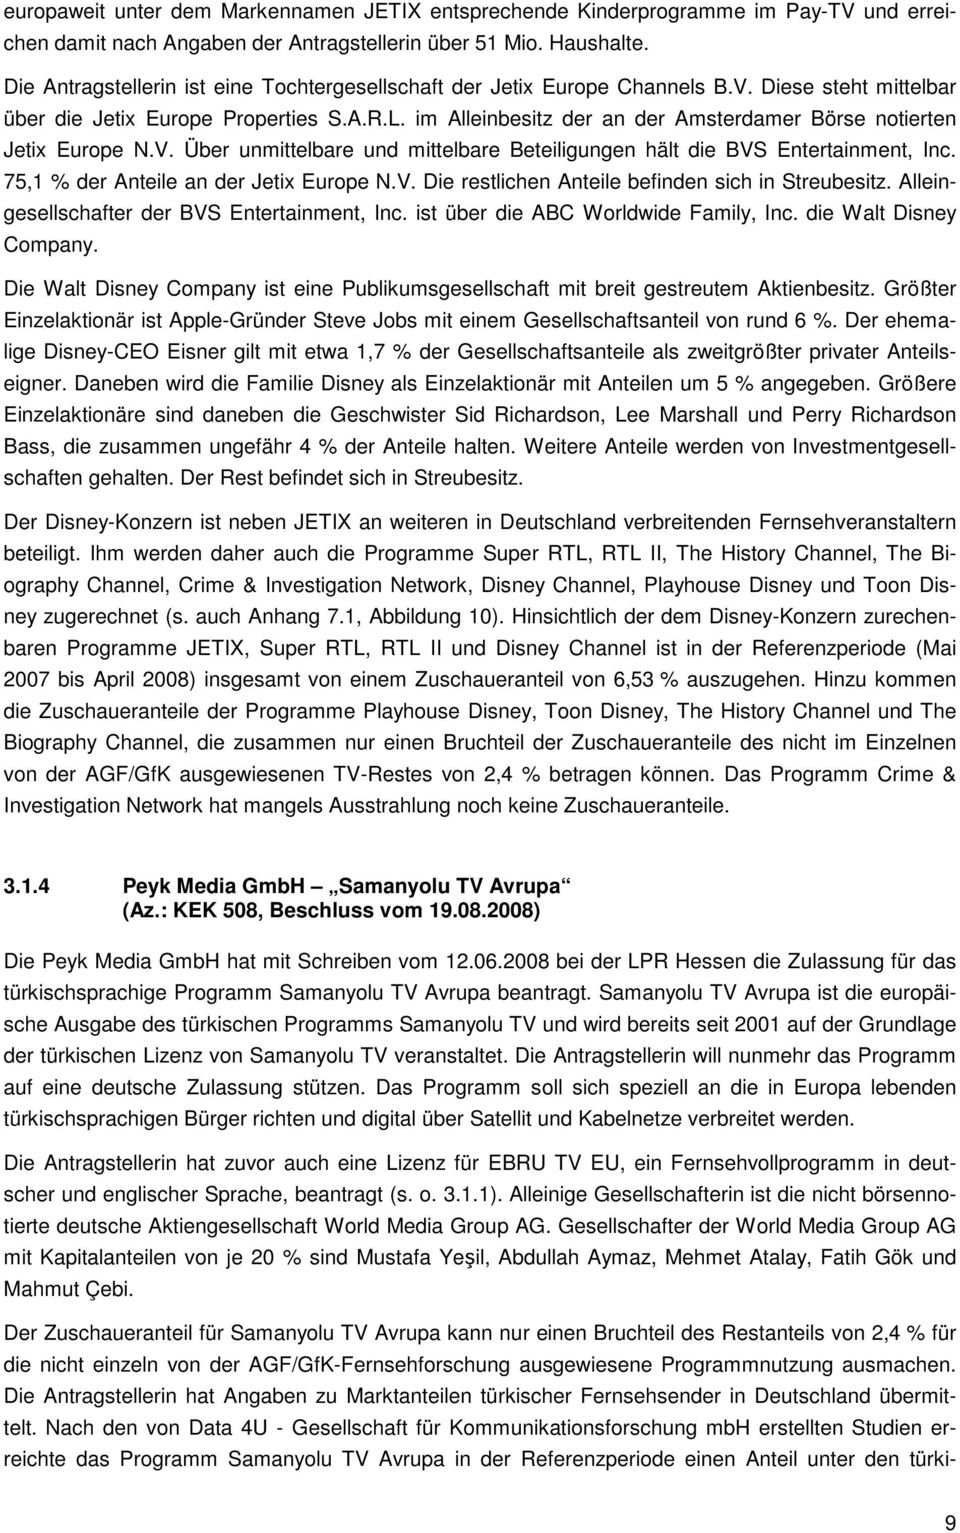 im Alleinbesitz der an der Amsterdamer Börse notierten Jetix Europe N.V. Über unmittelbare und mittelbare Beteiligungen hält die BVS Entertainment, Inc. 75,1 % der Anteile an der Jetix Europe N.V. Die restlichen Anteile befinden sich in Streubesitz.